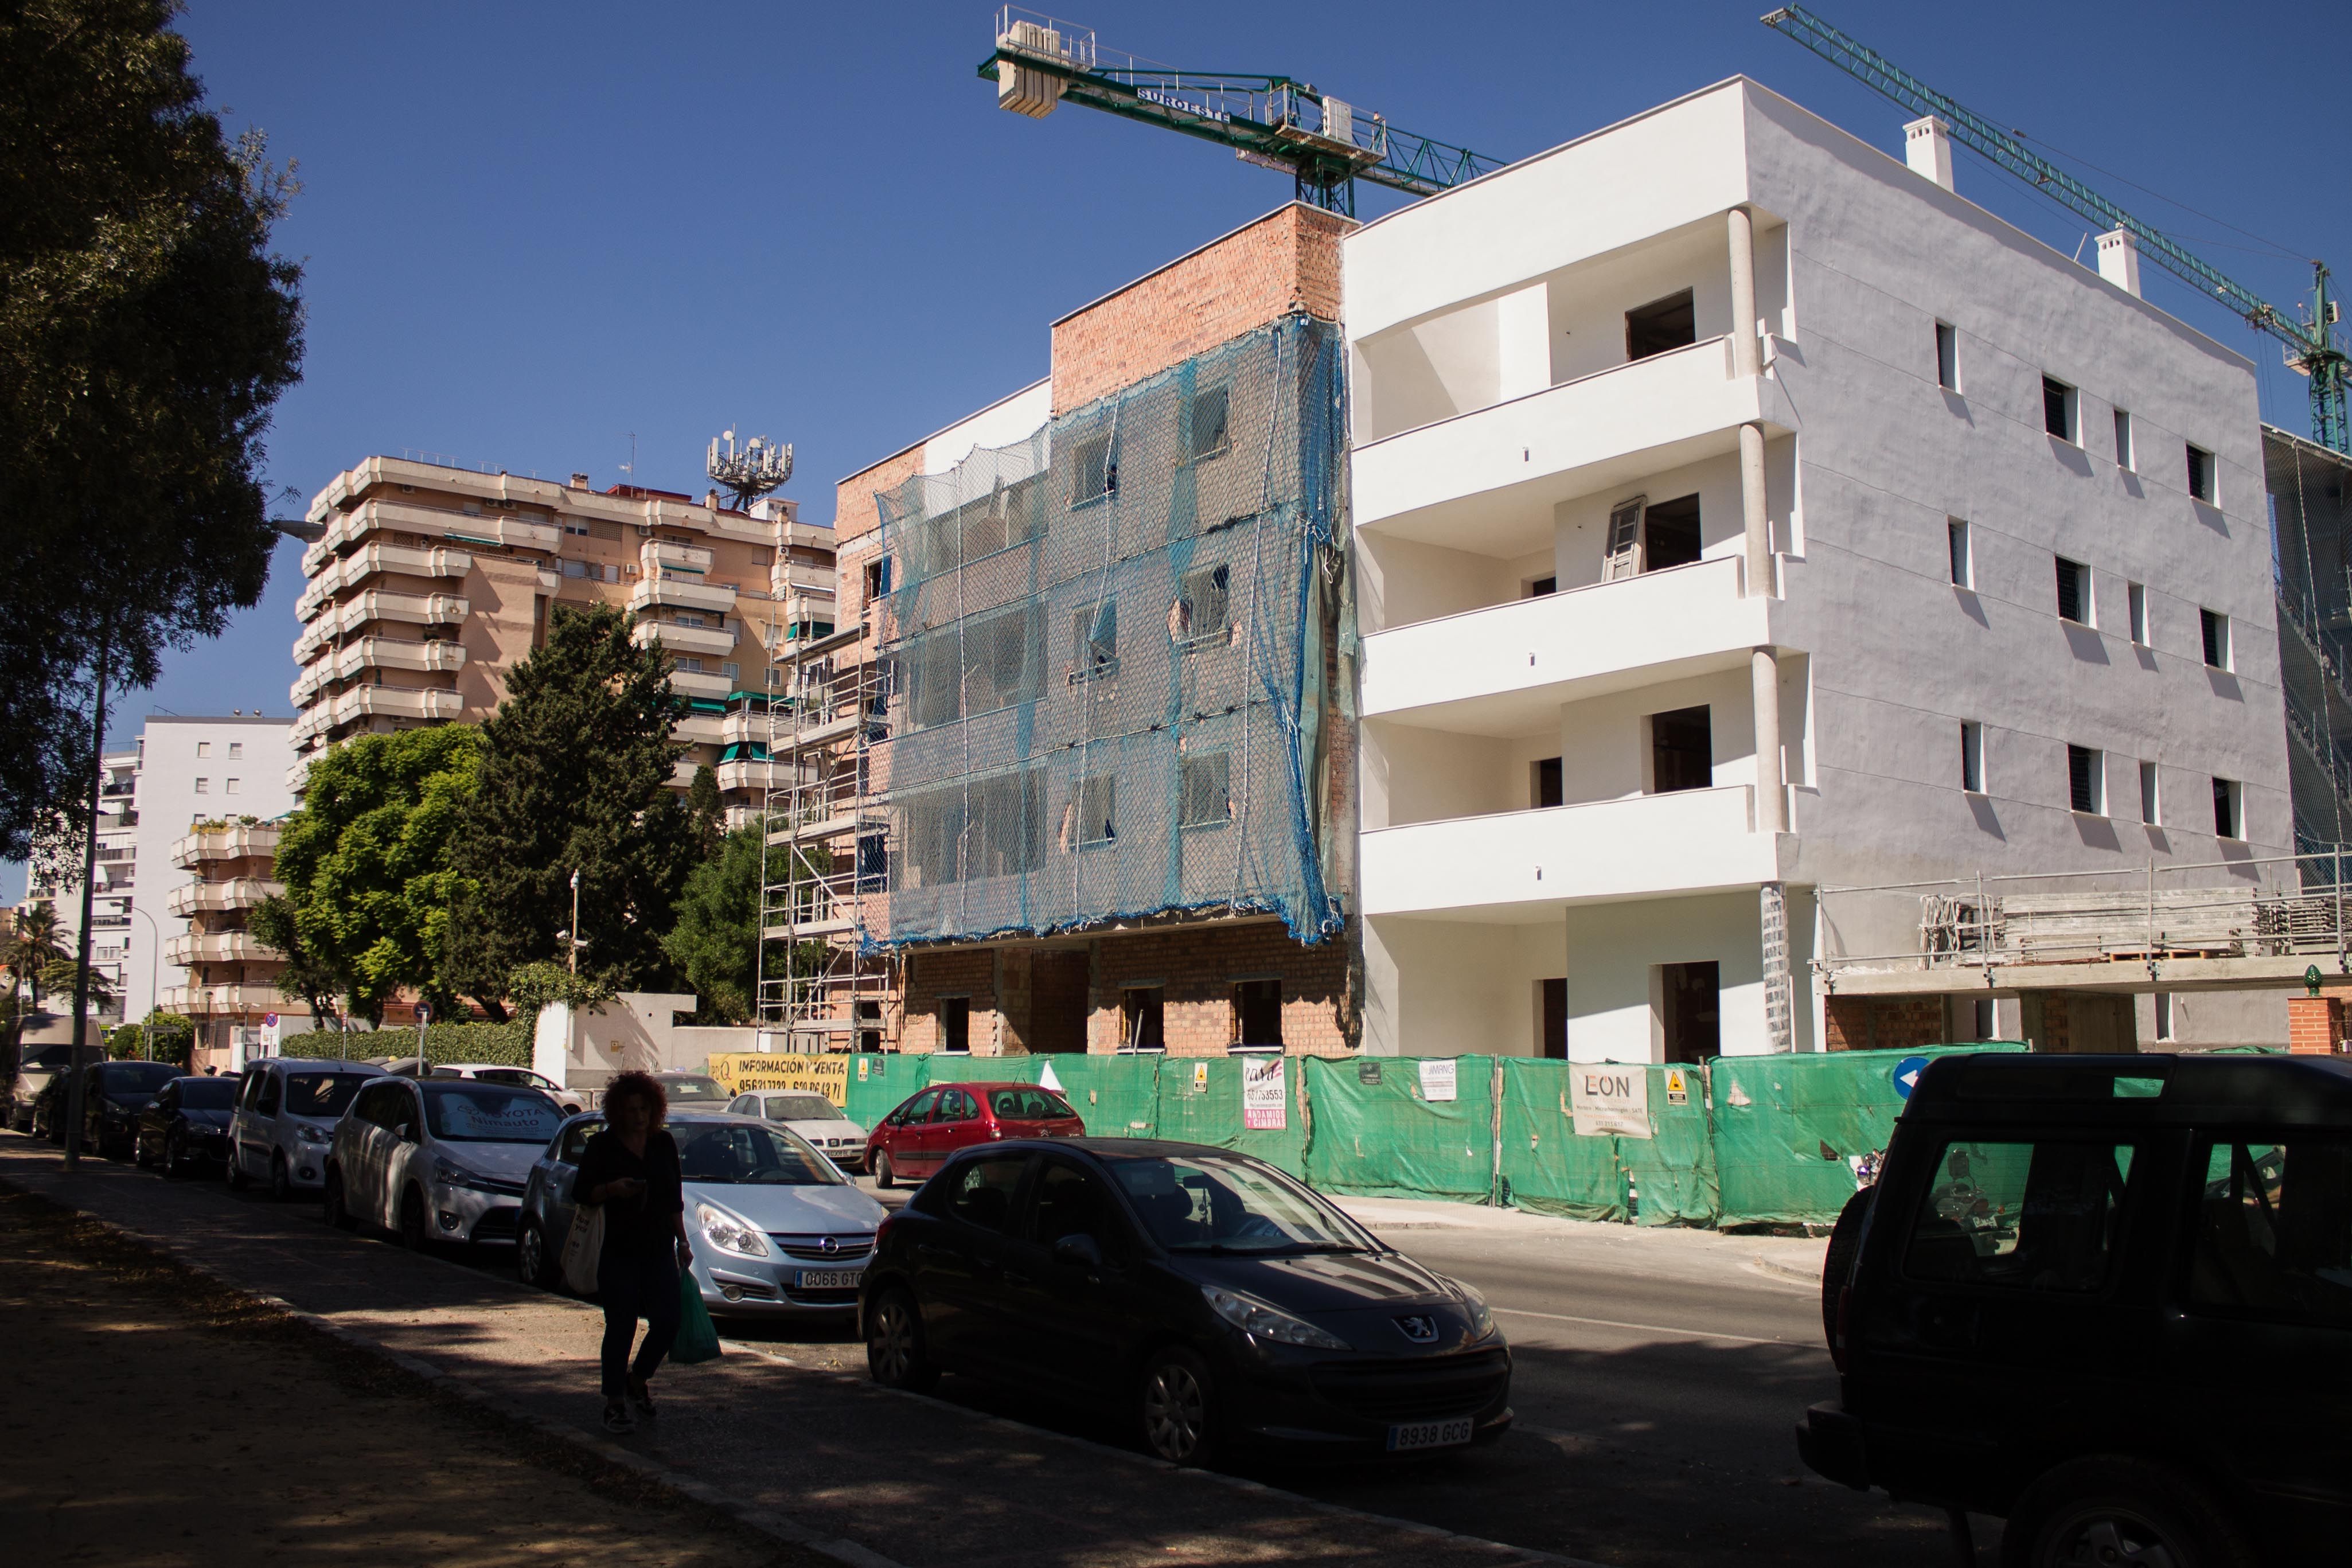 Construcción de viviendas en Jerez, en una imagen reciente.